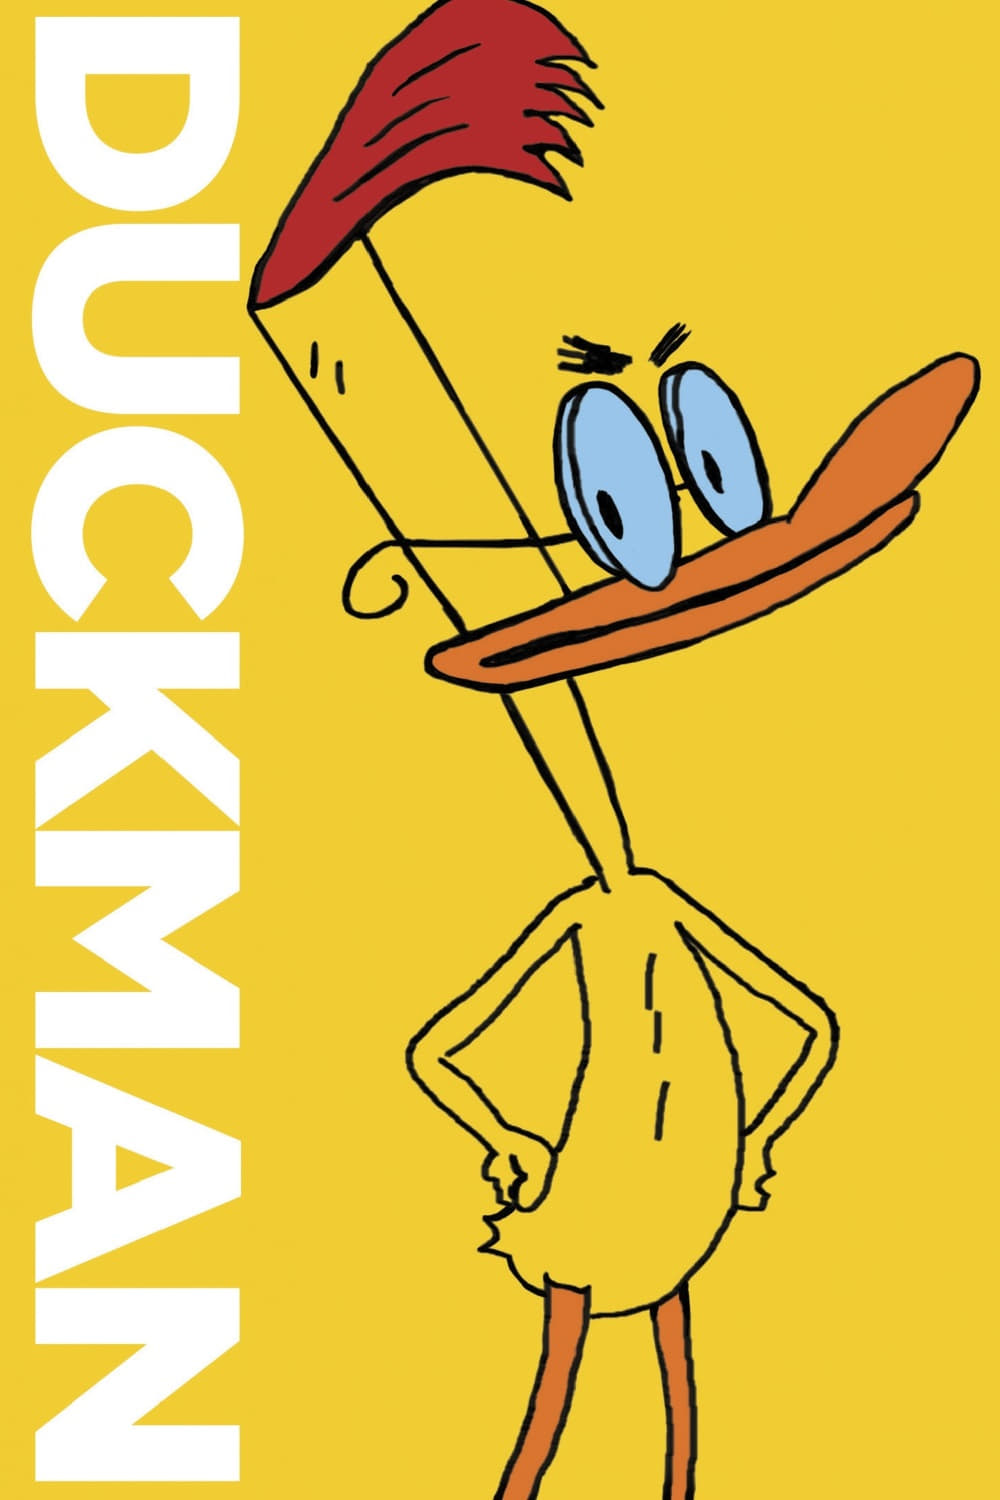 Duckman (1994)